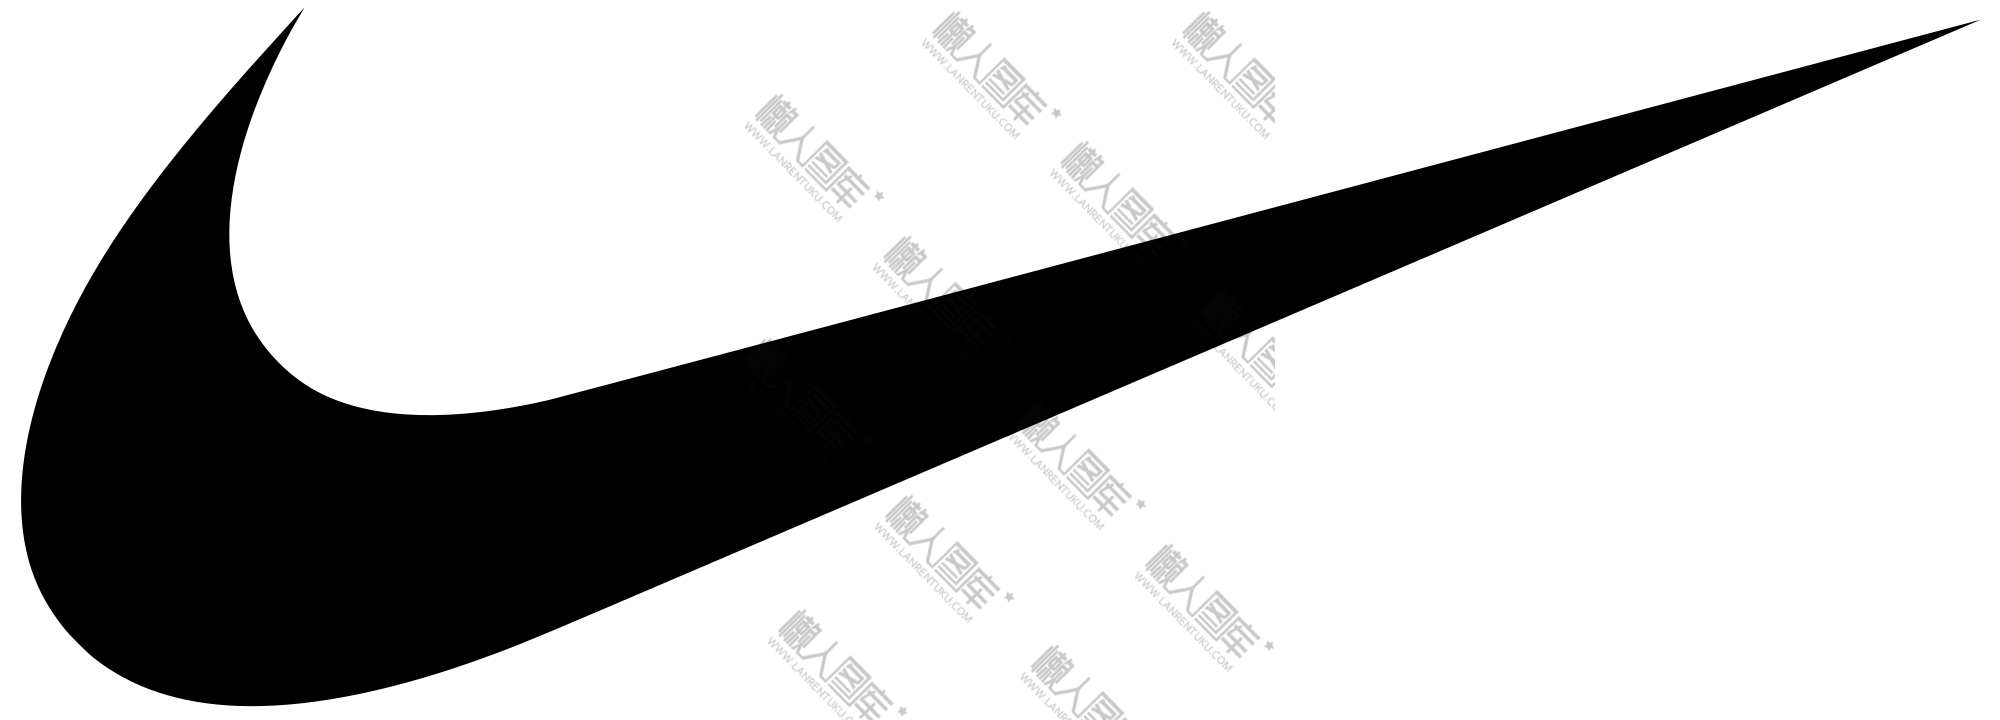 耐克logo潮图壁纸